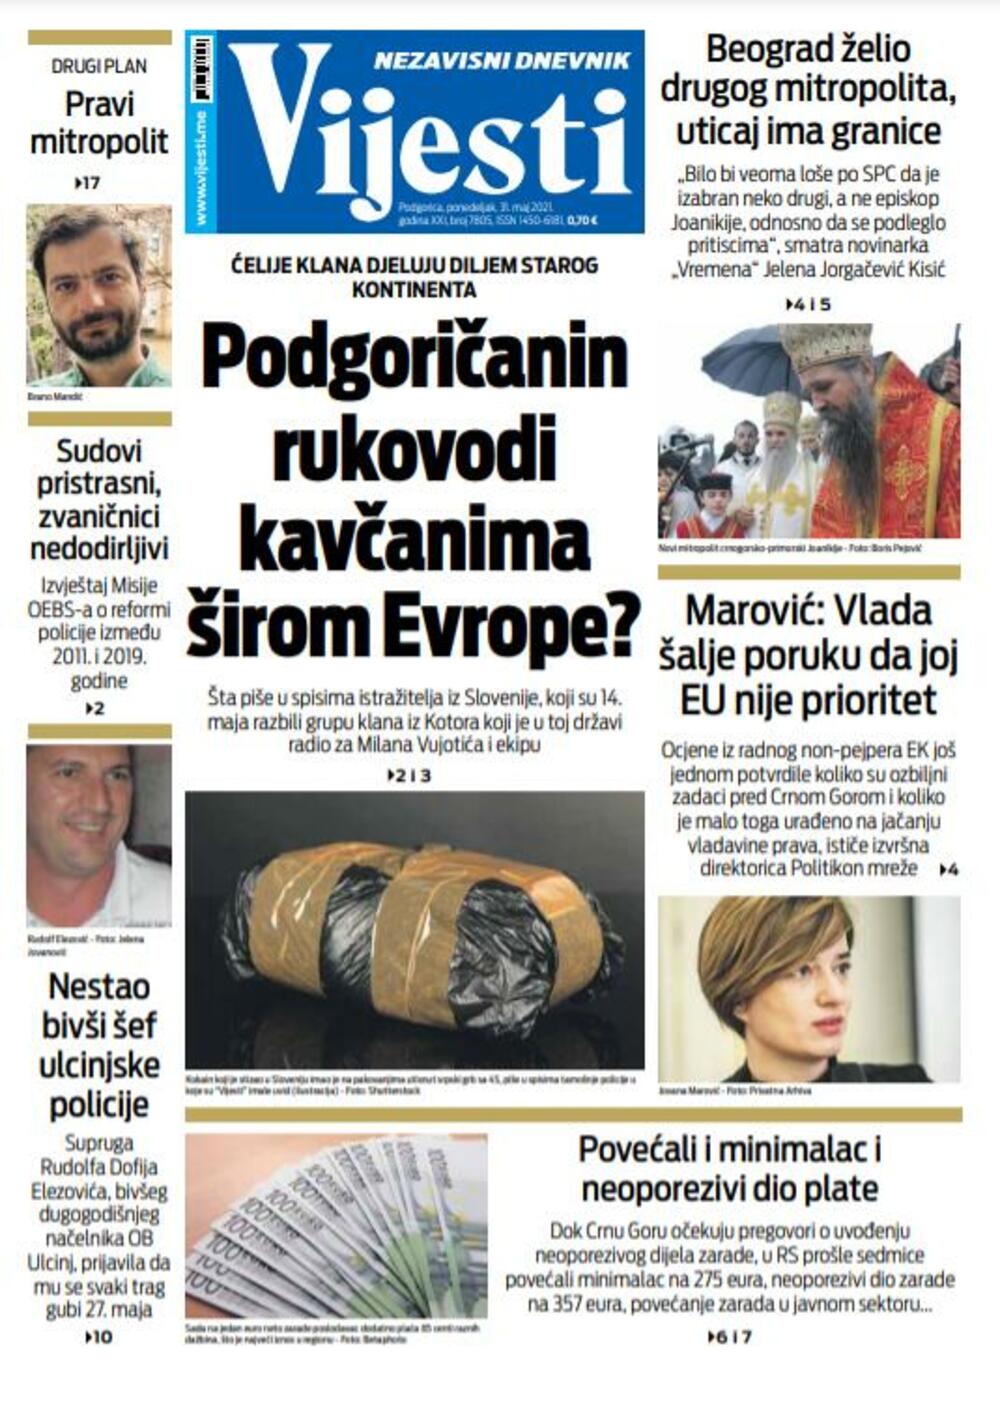 Naslovna strana "Vijesti" za ponedjeljak 31. maj 2021. godine, Foto: Vijesti